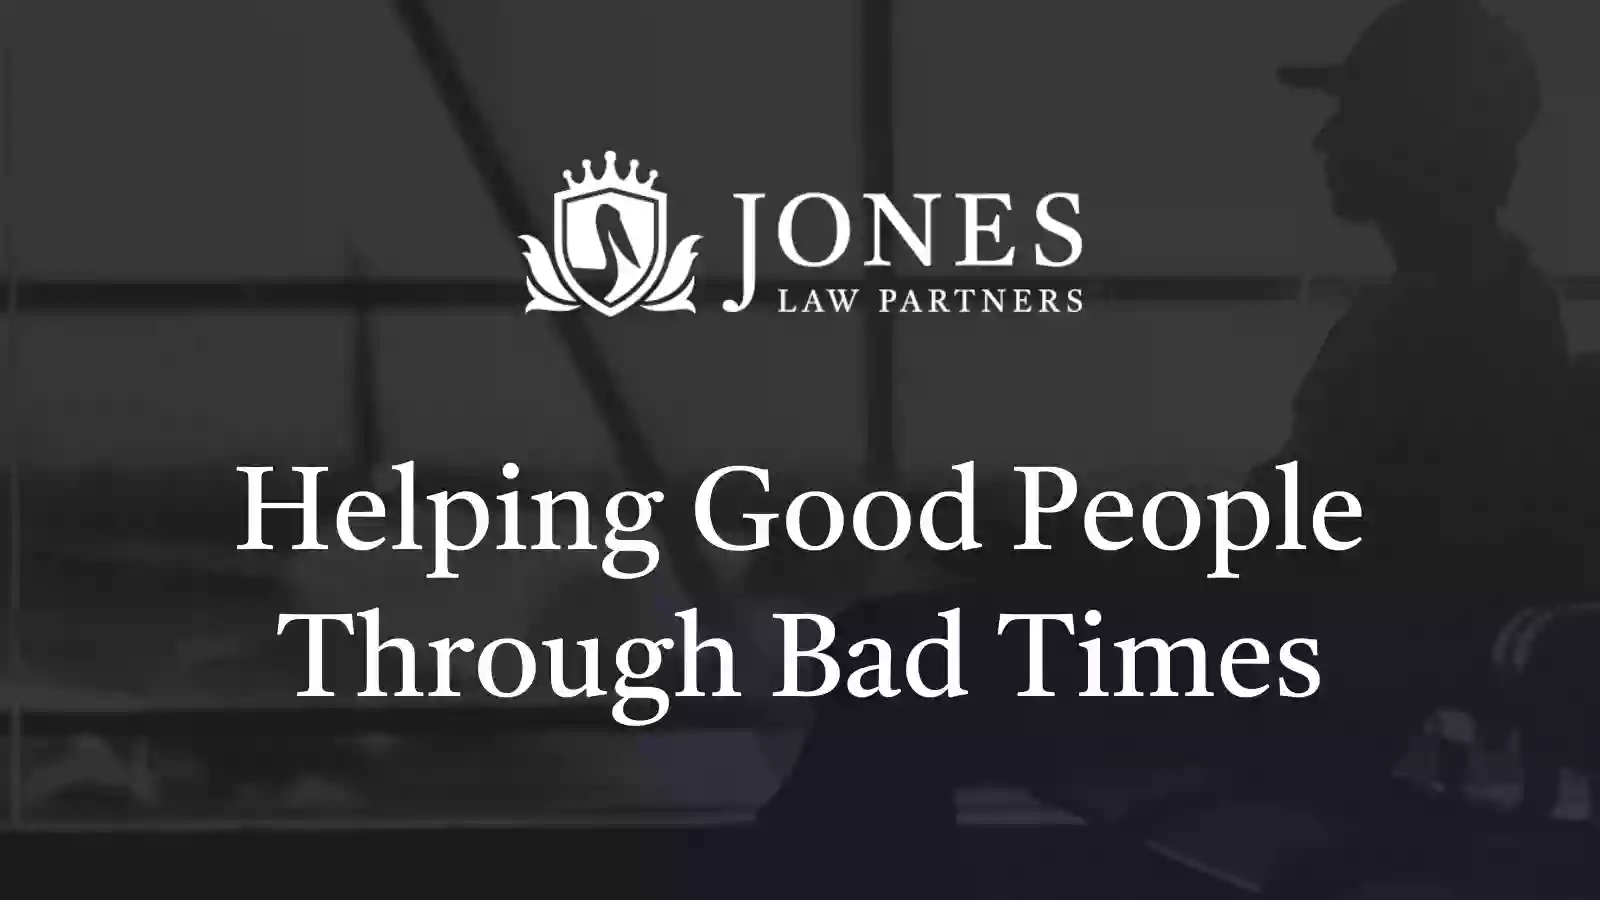 Jones Law Partners